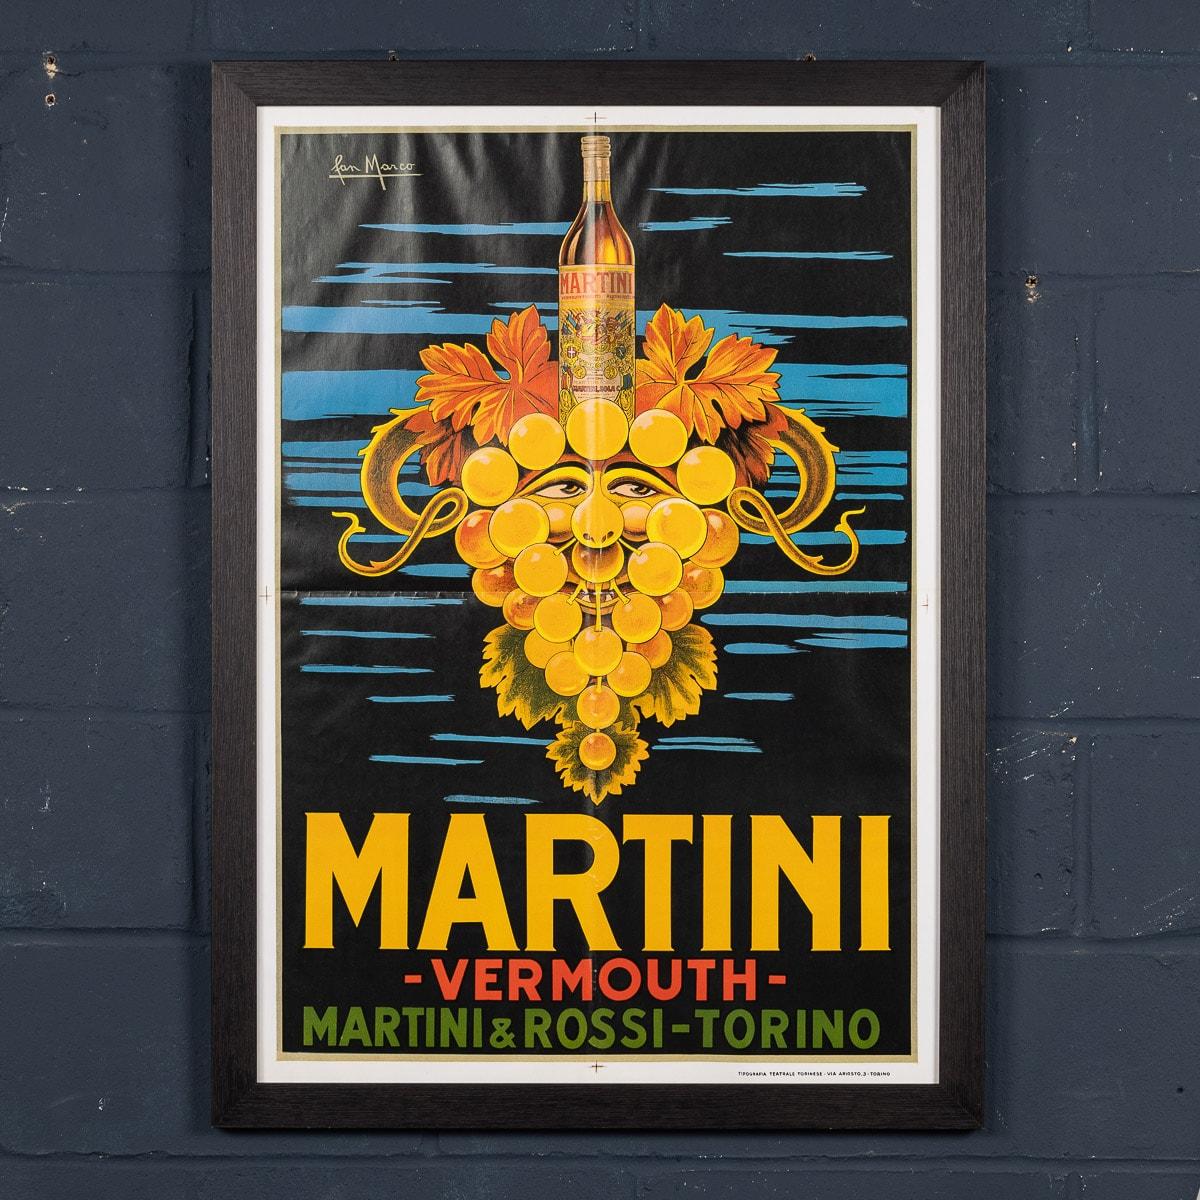 Né au milieu du XIXe siècle en Italie, Martini est devenu une marque de boisson multinationale. Cette magnifique affiche a été créée dans les années 1930 et a connu un tel succès qu'elle était encore diffusée dans les années 1960 et qu'elle est